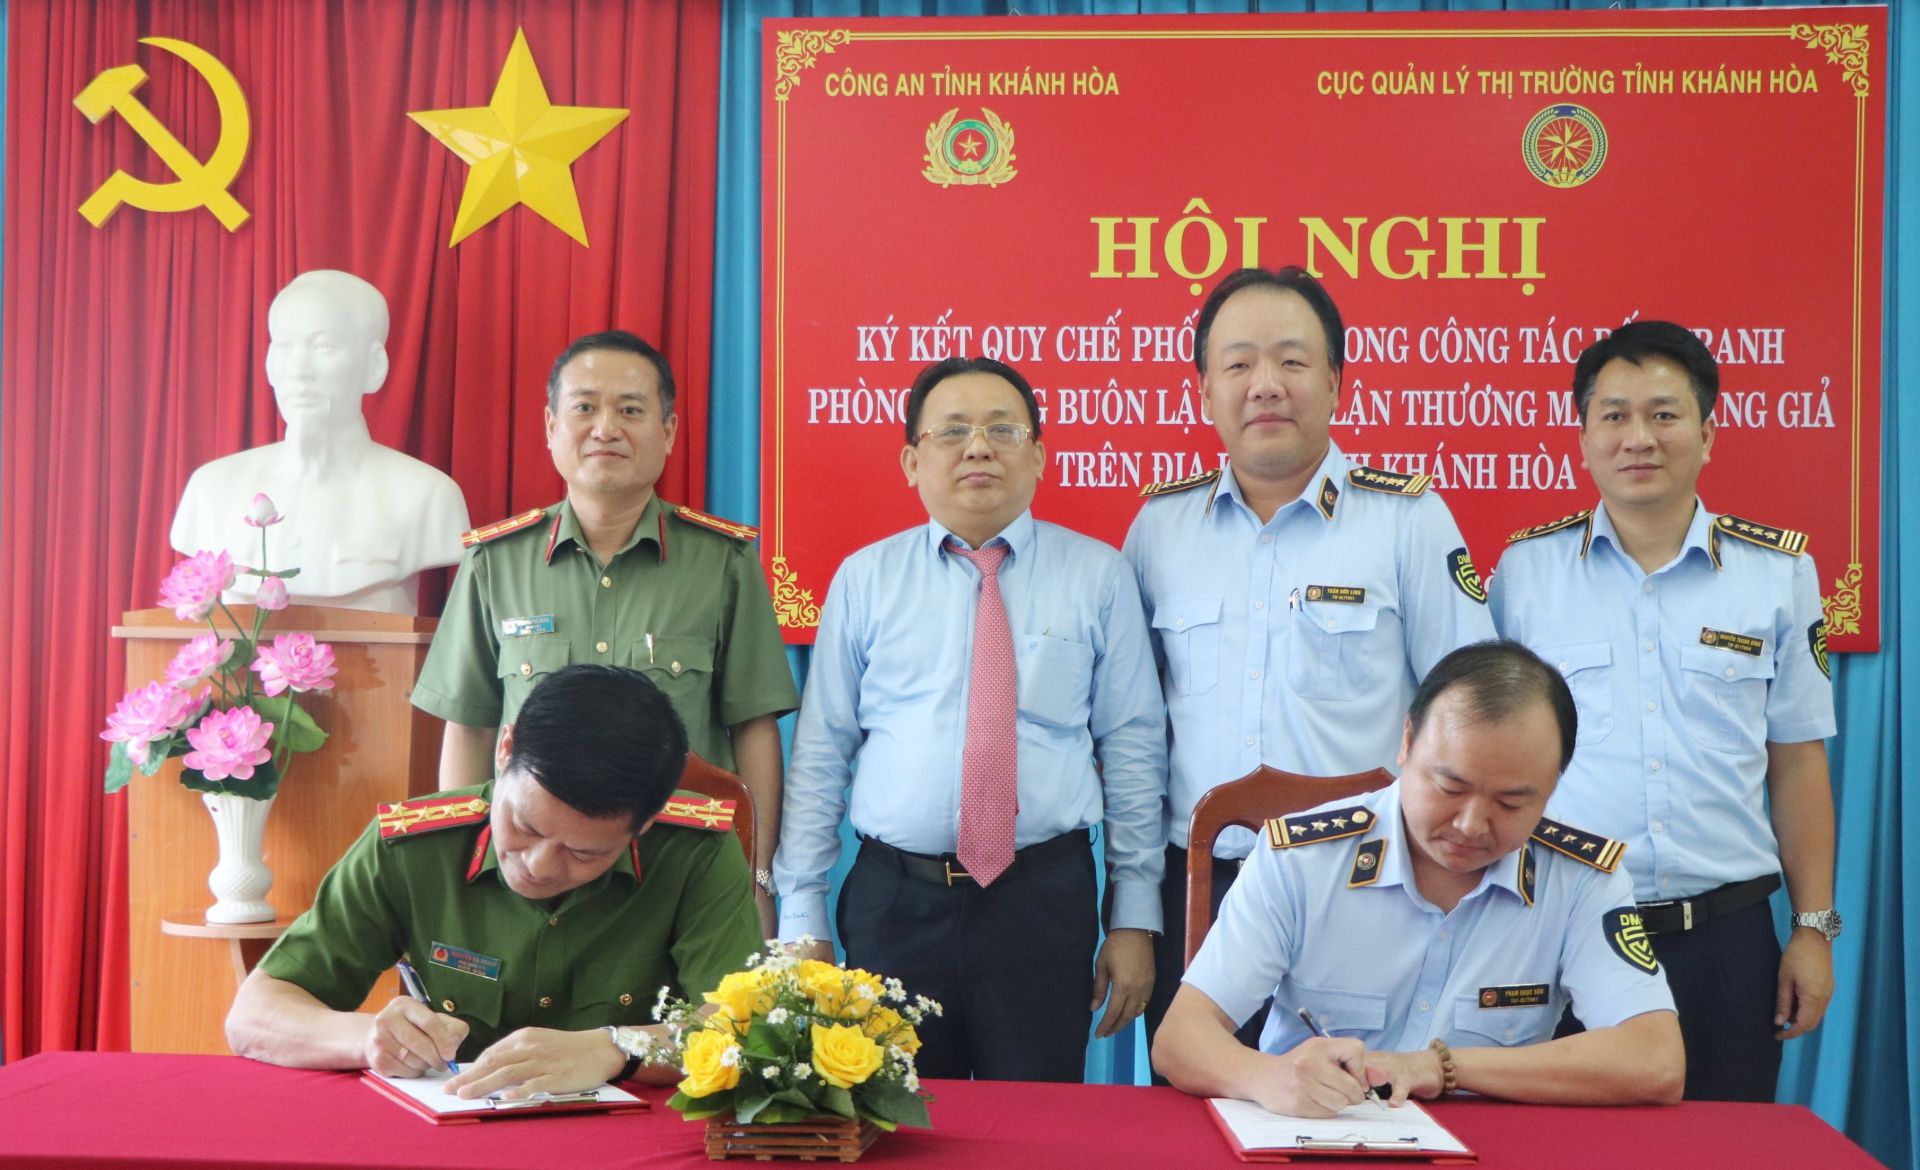 Cục QLTT Khánh Hòa và Công an tỉnh Khánh Hòa tổ chức hội nghị ký kết quy chế phối hợp trong công tác đấu tranh phòng, chống buôn lậu, gian lận thương mại và hàng giả trên địa bàn tỉnh.